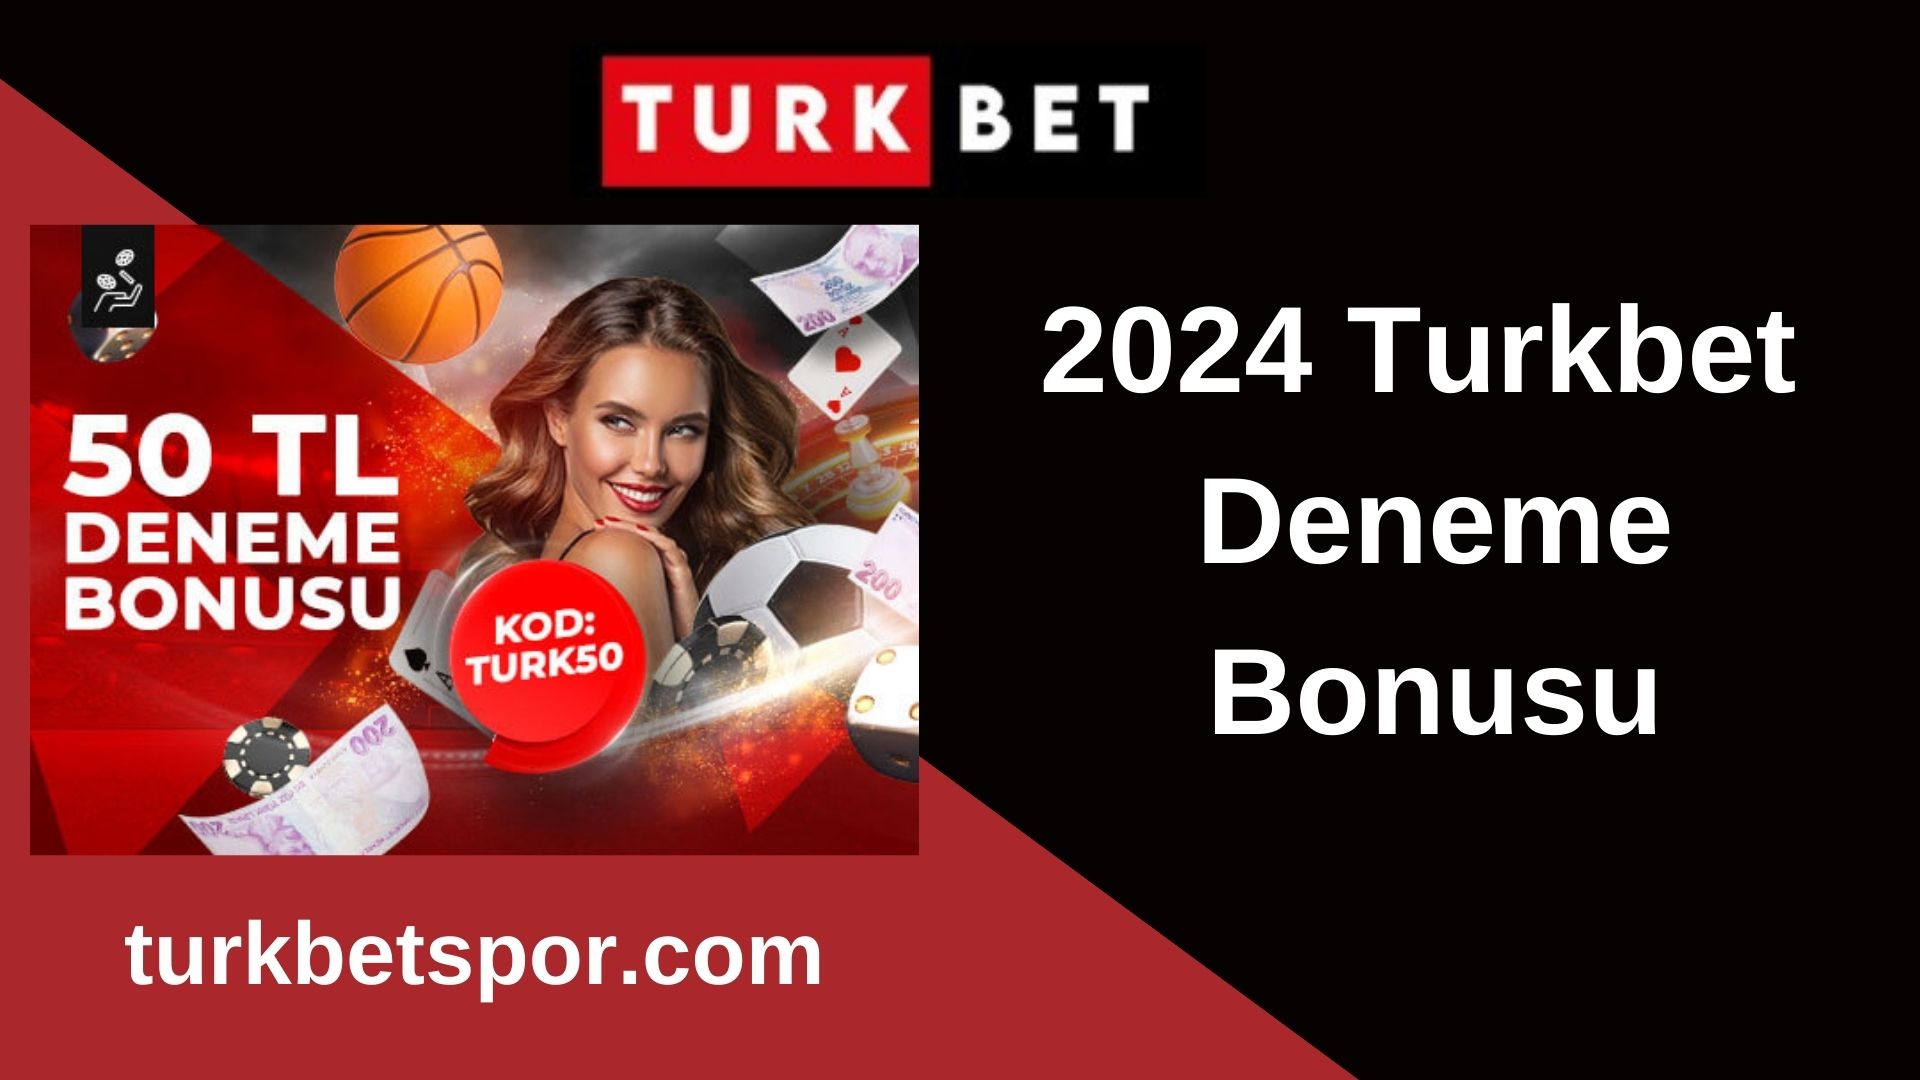 2024 Turkbet Deneme Bonusu